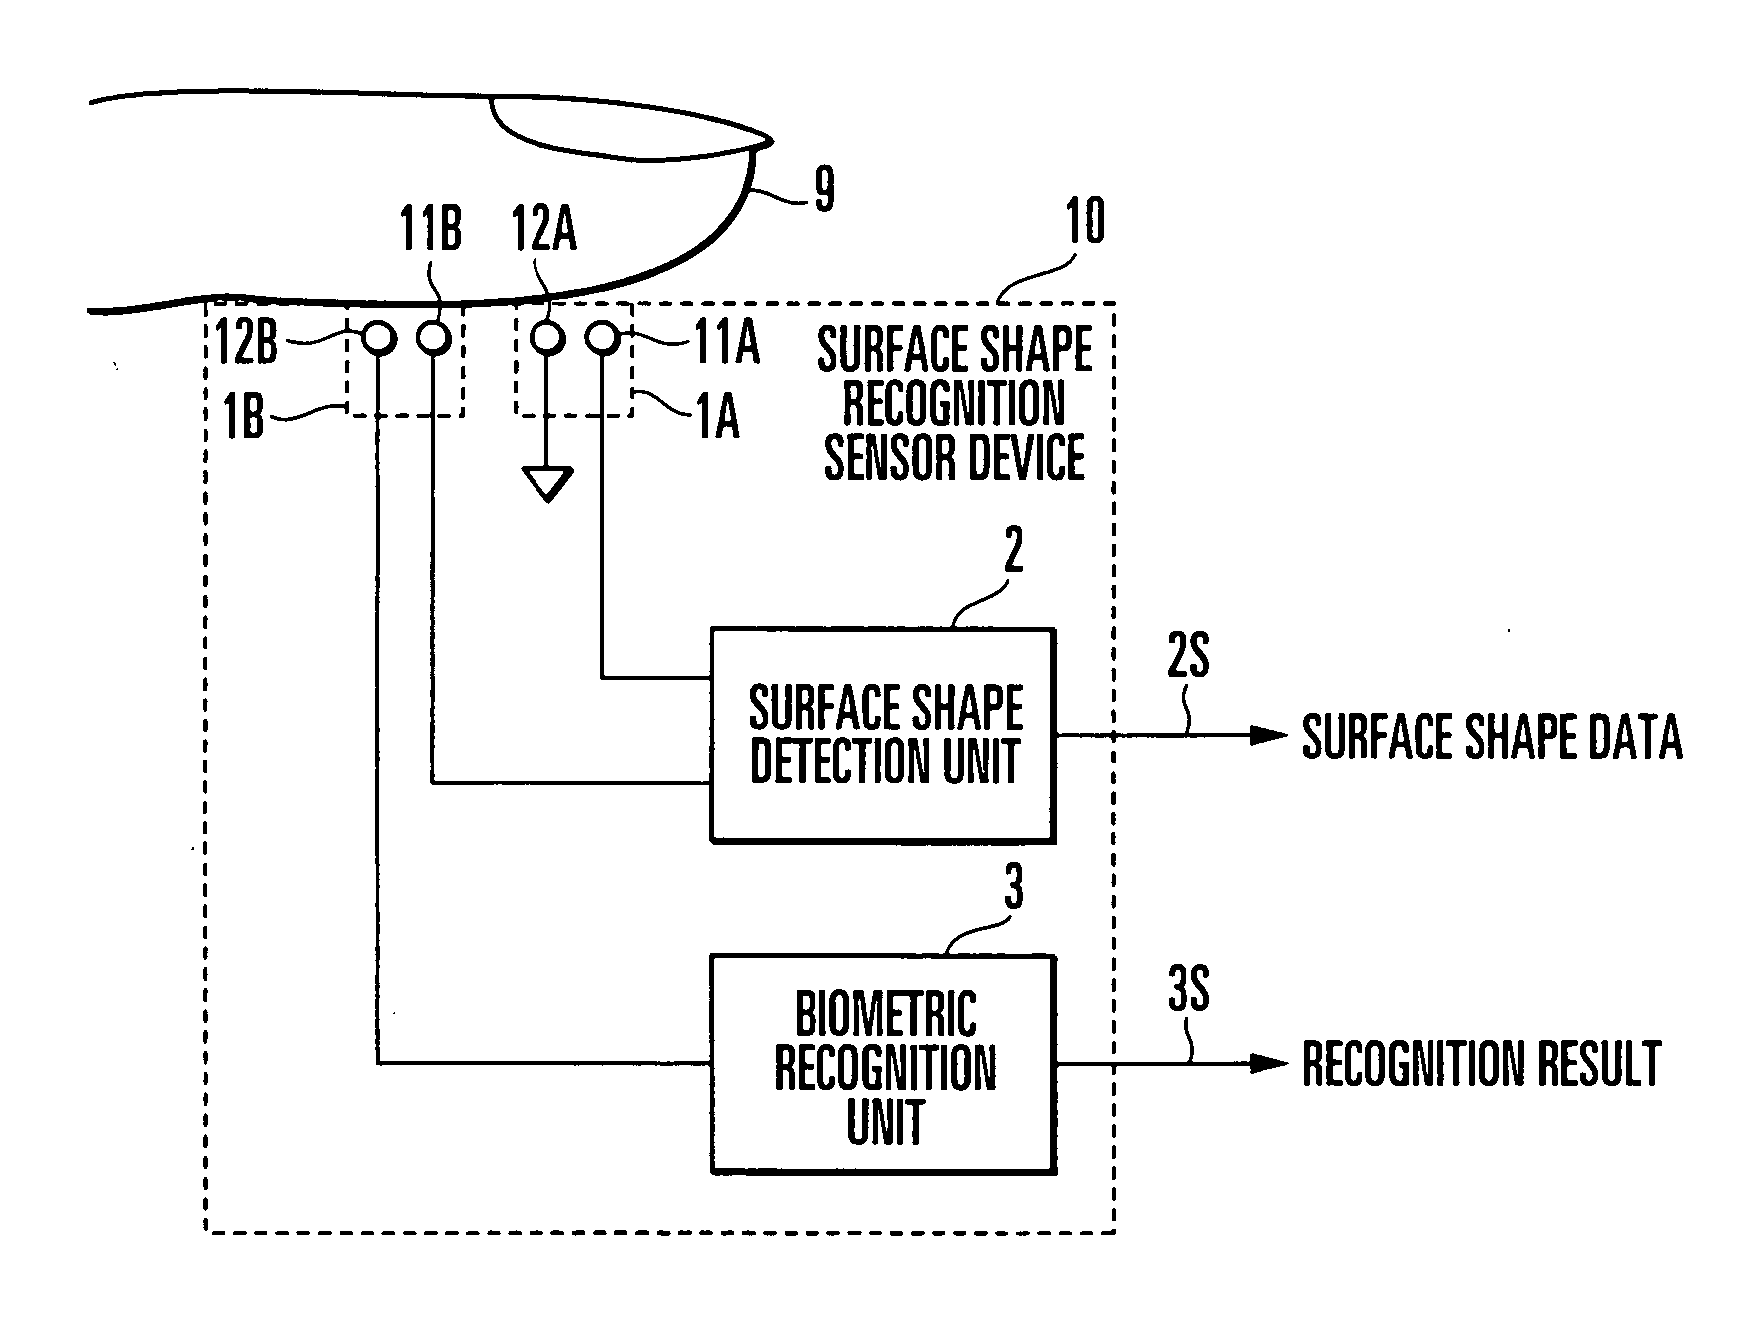 Surface shape recognition sensor